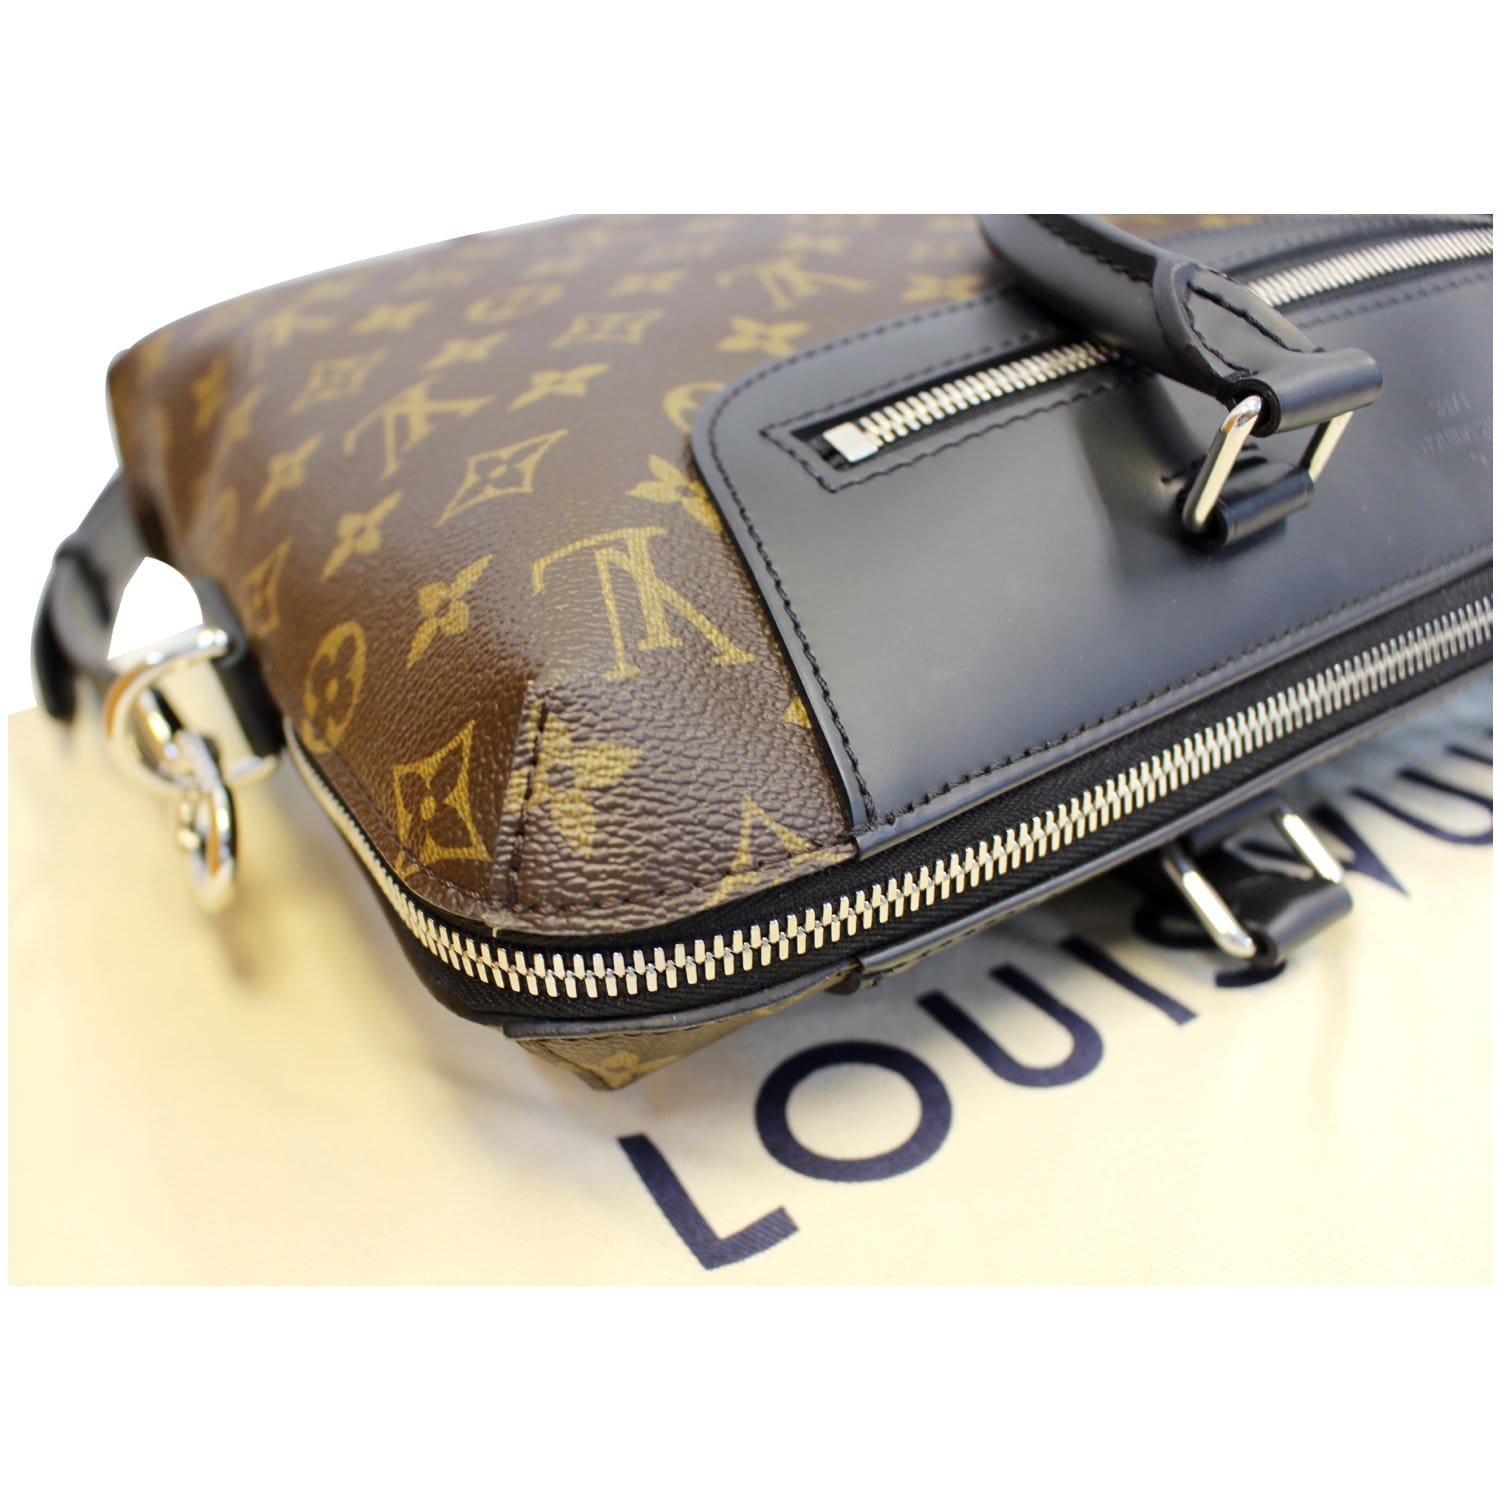 WeeklyLuxDrop - WLD  Louis Vuitton Porte-Documents Jour Briefcase Macassar  in Monogram Canvas